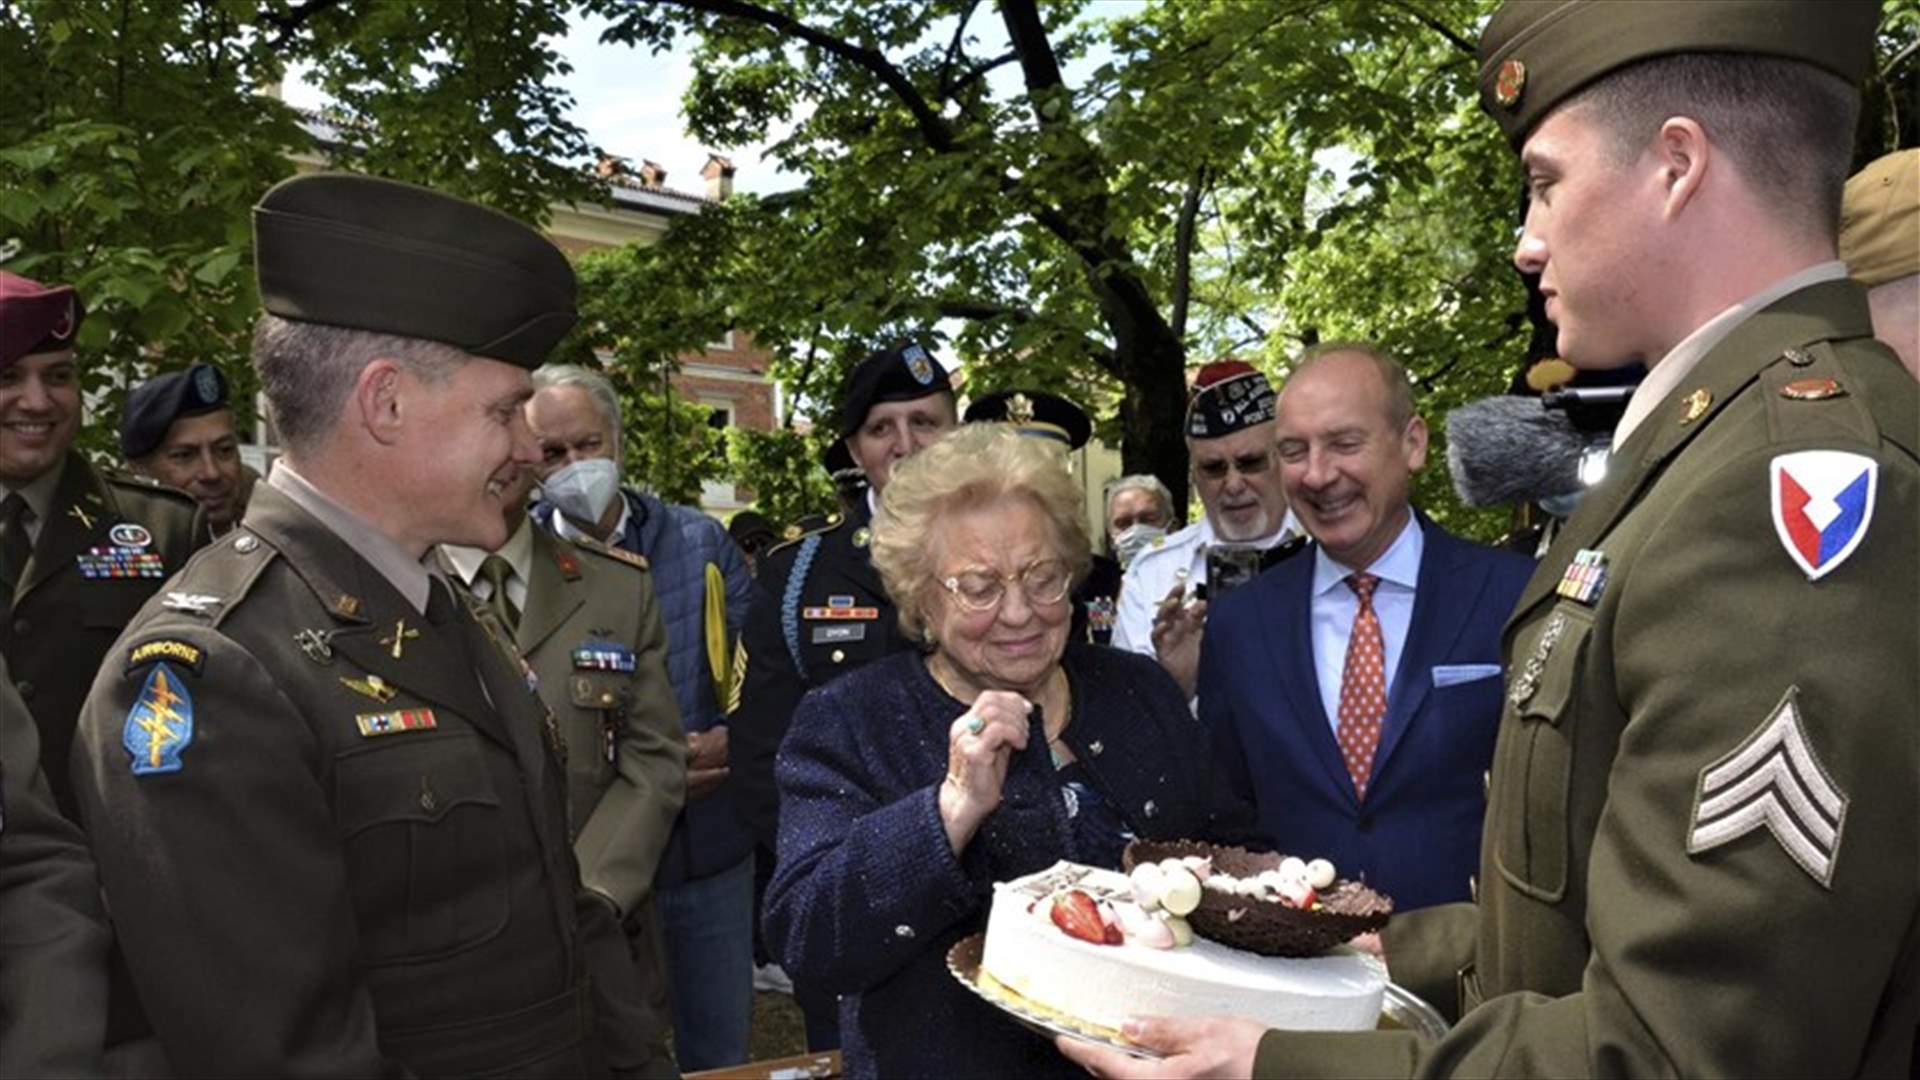 بعد 77 عاماً... جنود أميركيون يعيدون كعكة عيد ميلاد لسيدة إيطالية!